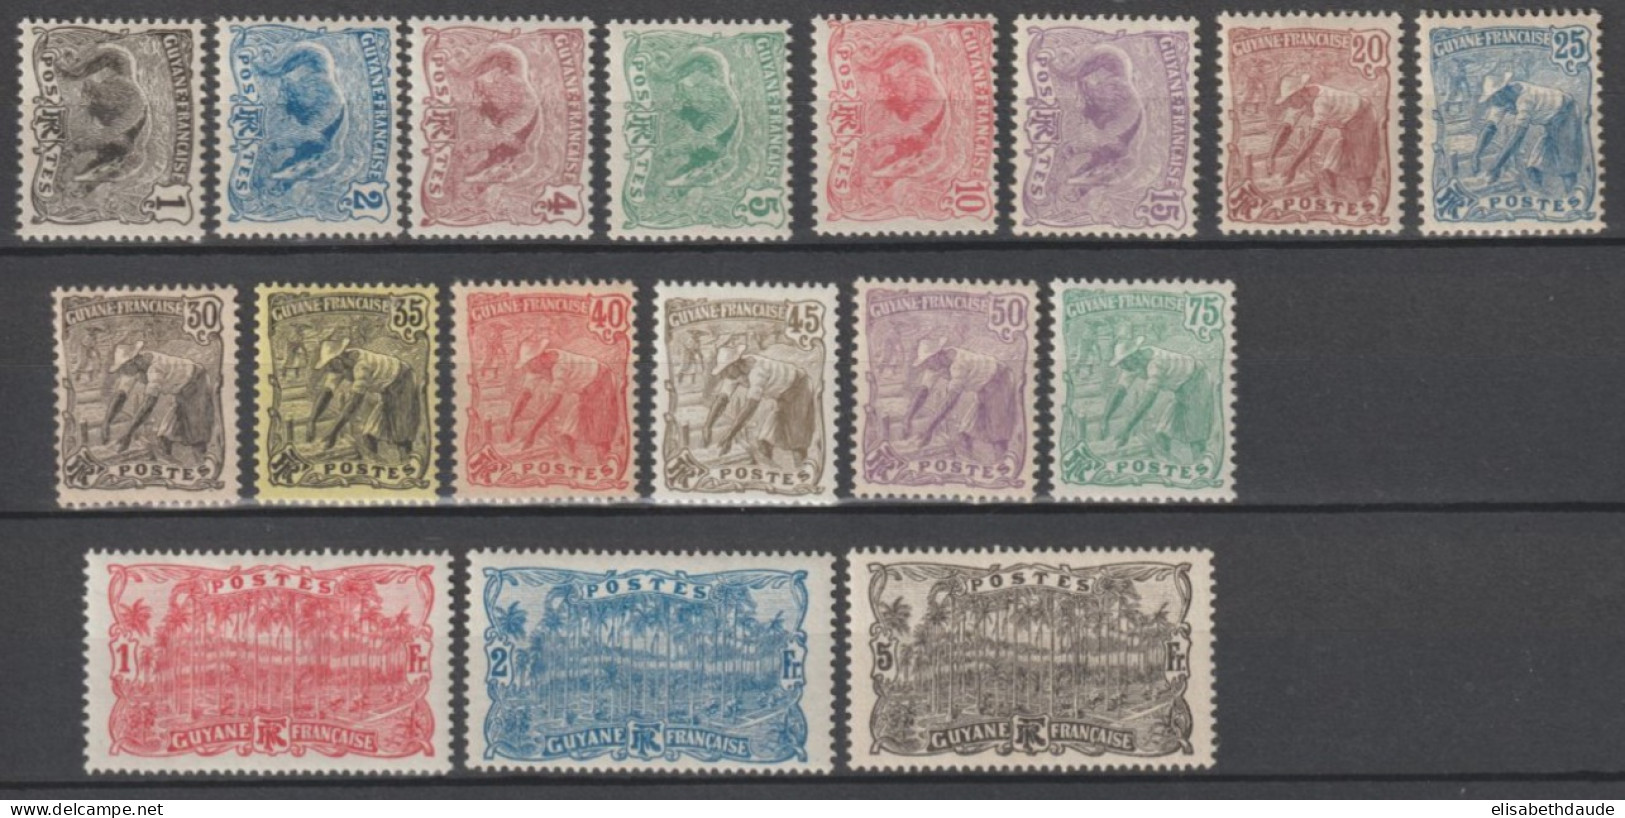 GUYANE - 1904 - SERIE YVERT N°49/65 * MLH - COTE = 39 EUR. - - Unused Stamps